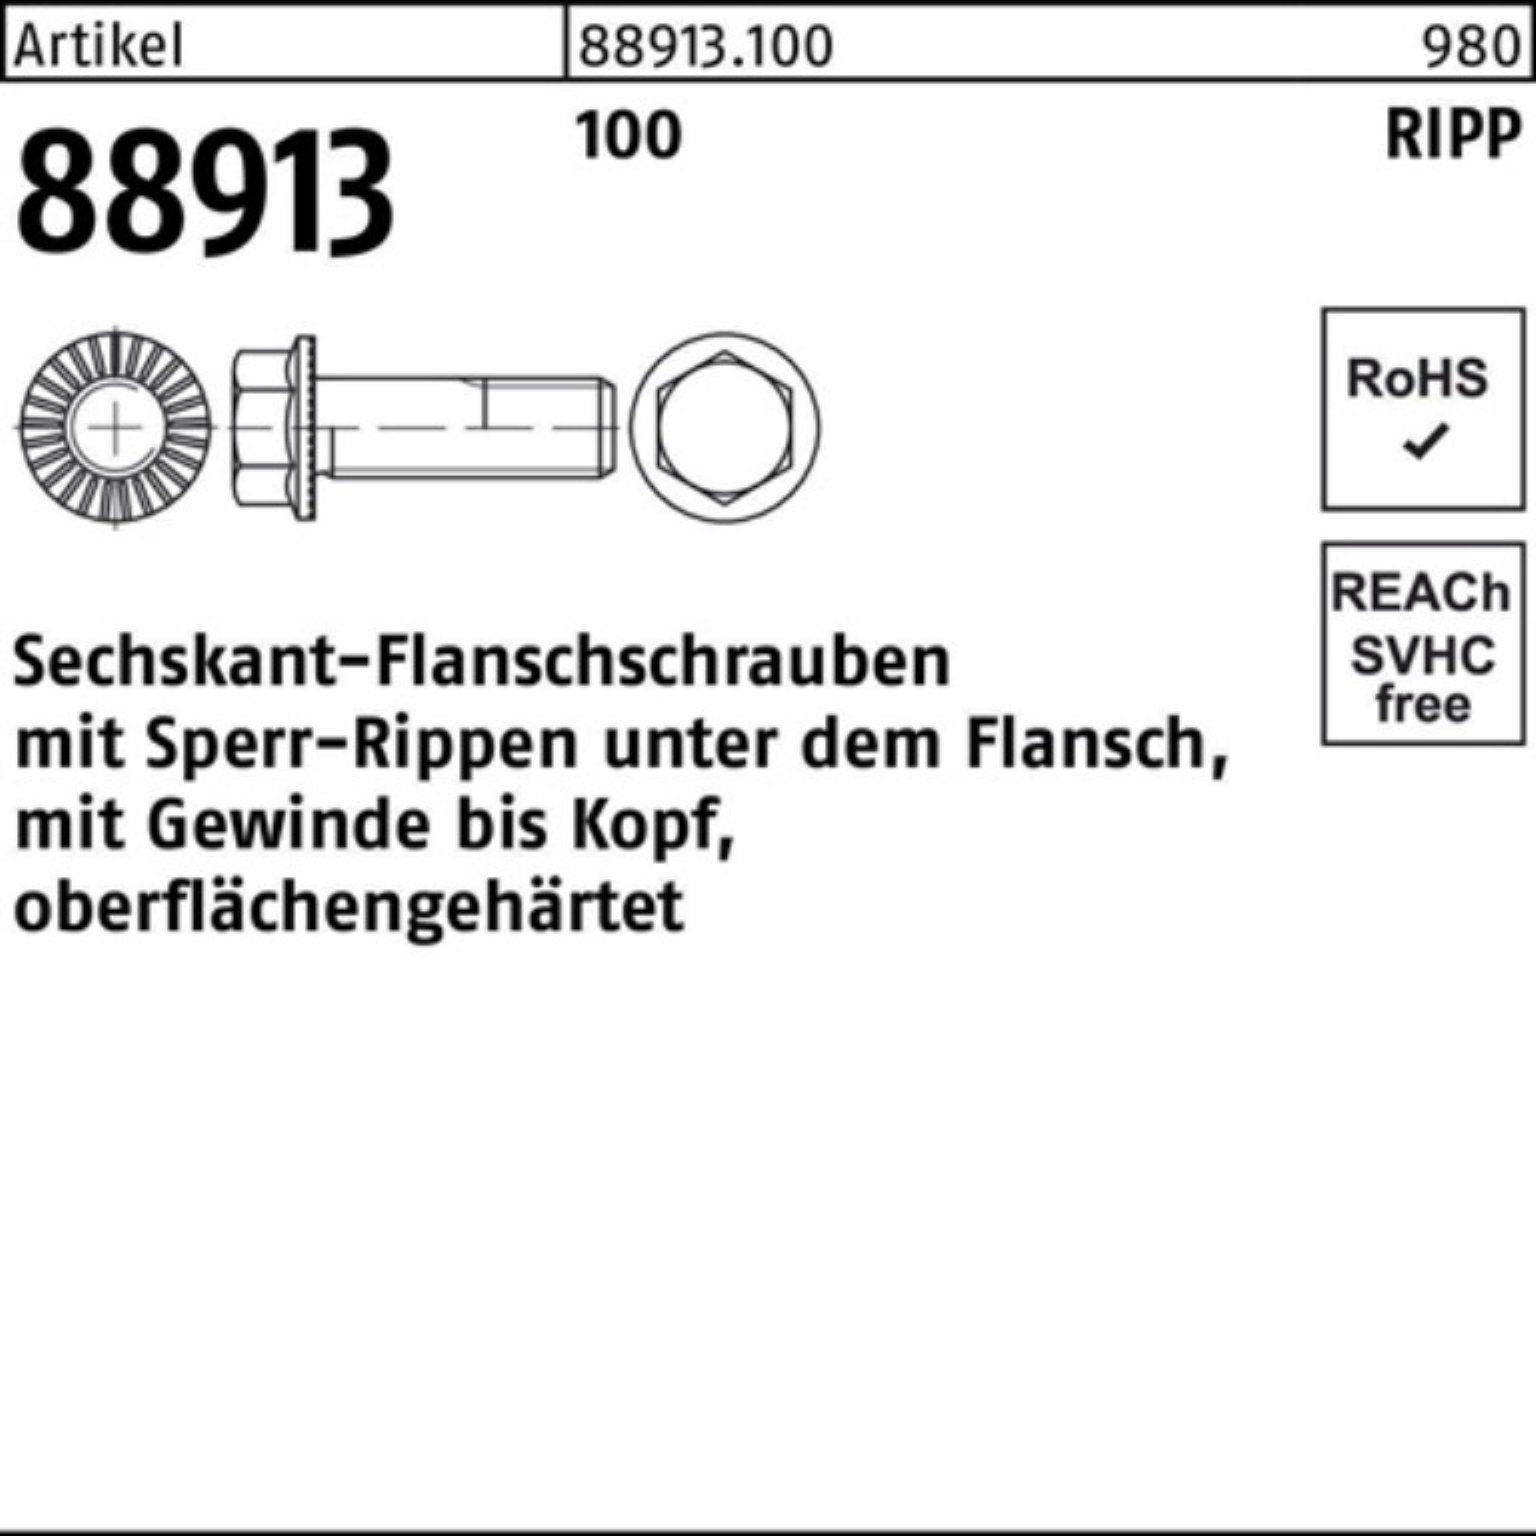 100 10 R Sechskantflanschschraube Reyher Pack M6x Schraube VG 88913 5 Sperr-Ripp 500er